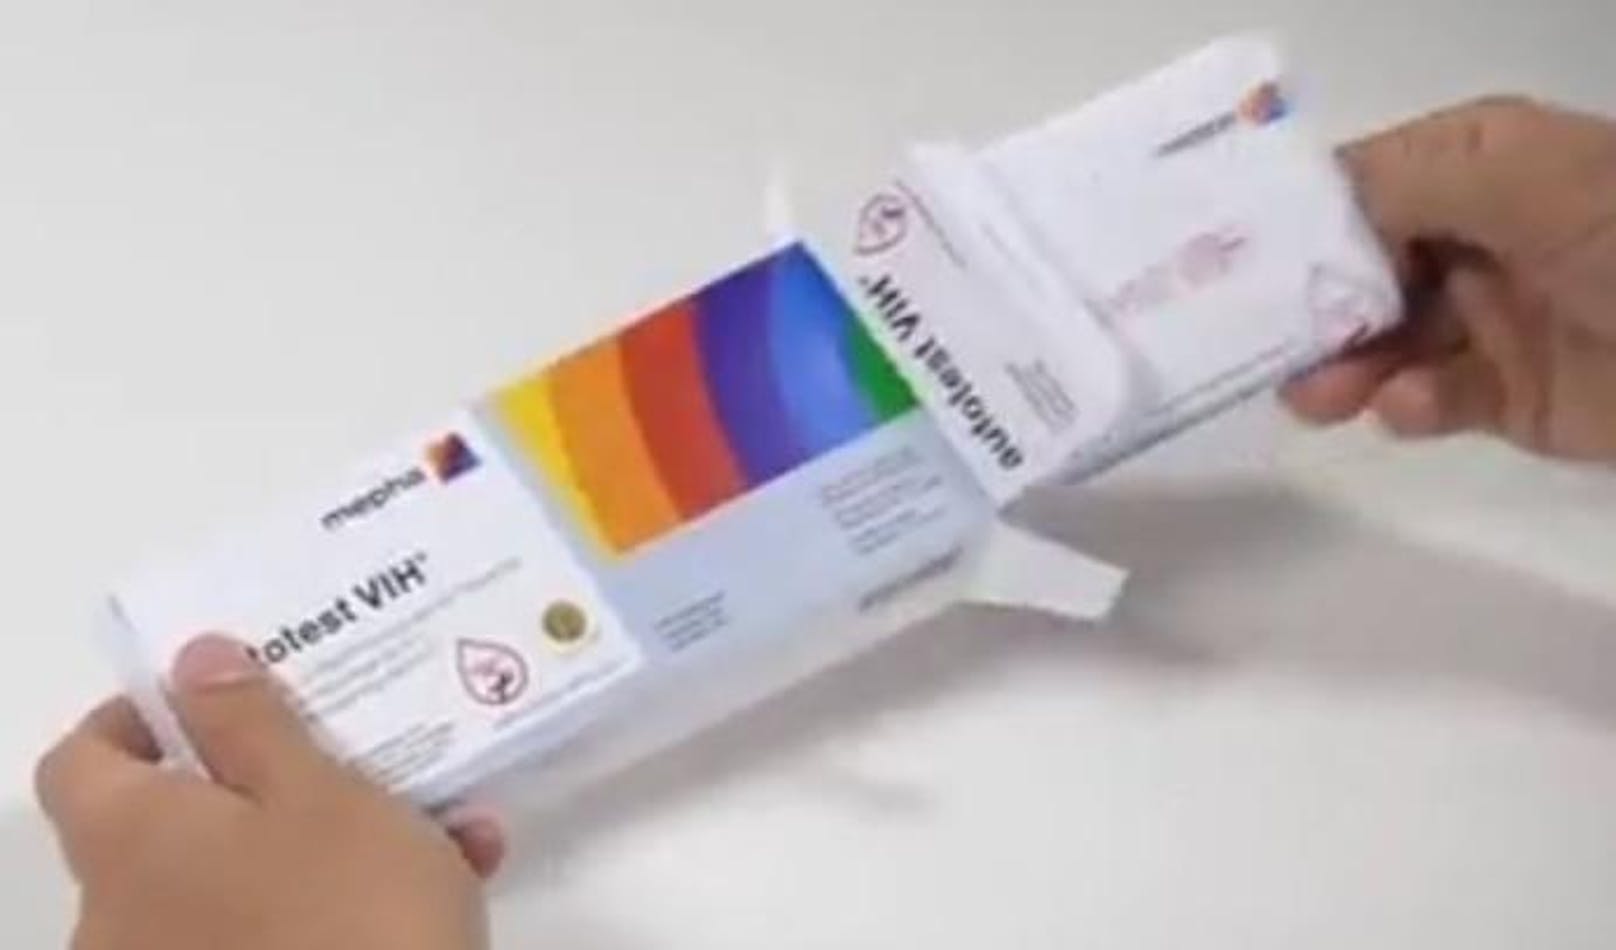 Seit Juli 2018 dürfen HIV-Tests zur Eigenanwendung in Österreich verkauft werden. Wie funktionieren die Tests? Ein Youtube-Video des französischen Pharmaunternehmens AAZ-LMB soll Aufschluss geben.